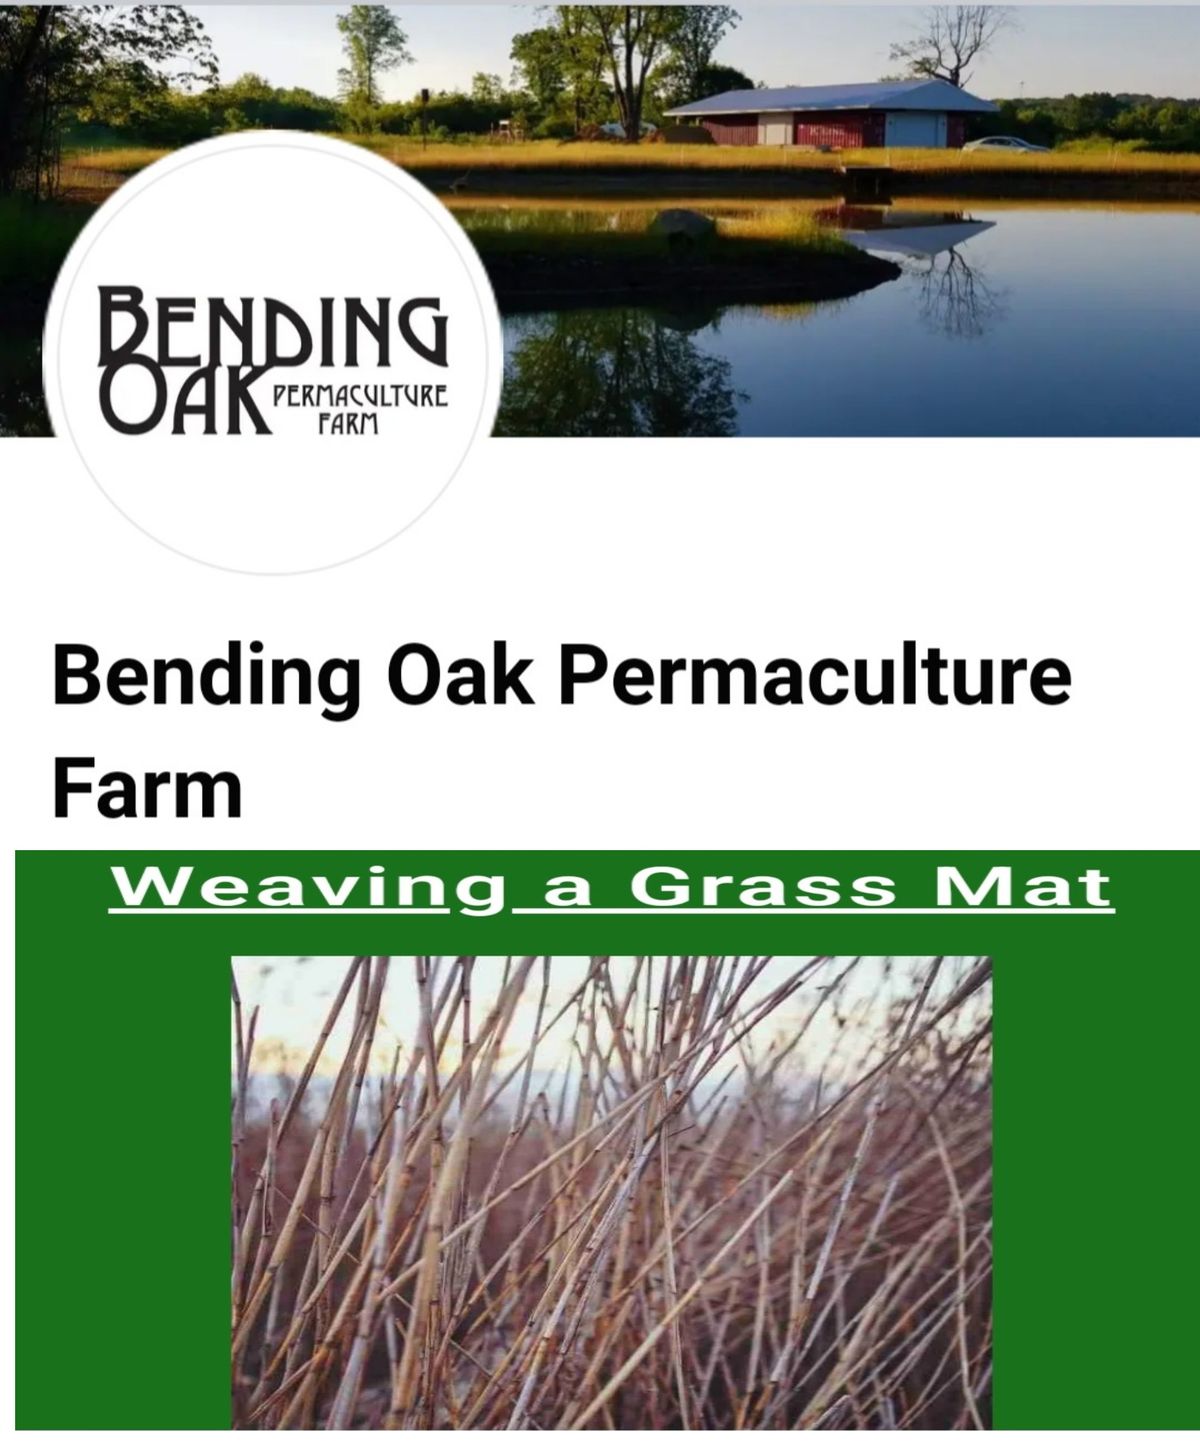 Weaving a Grass Mat